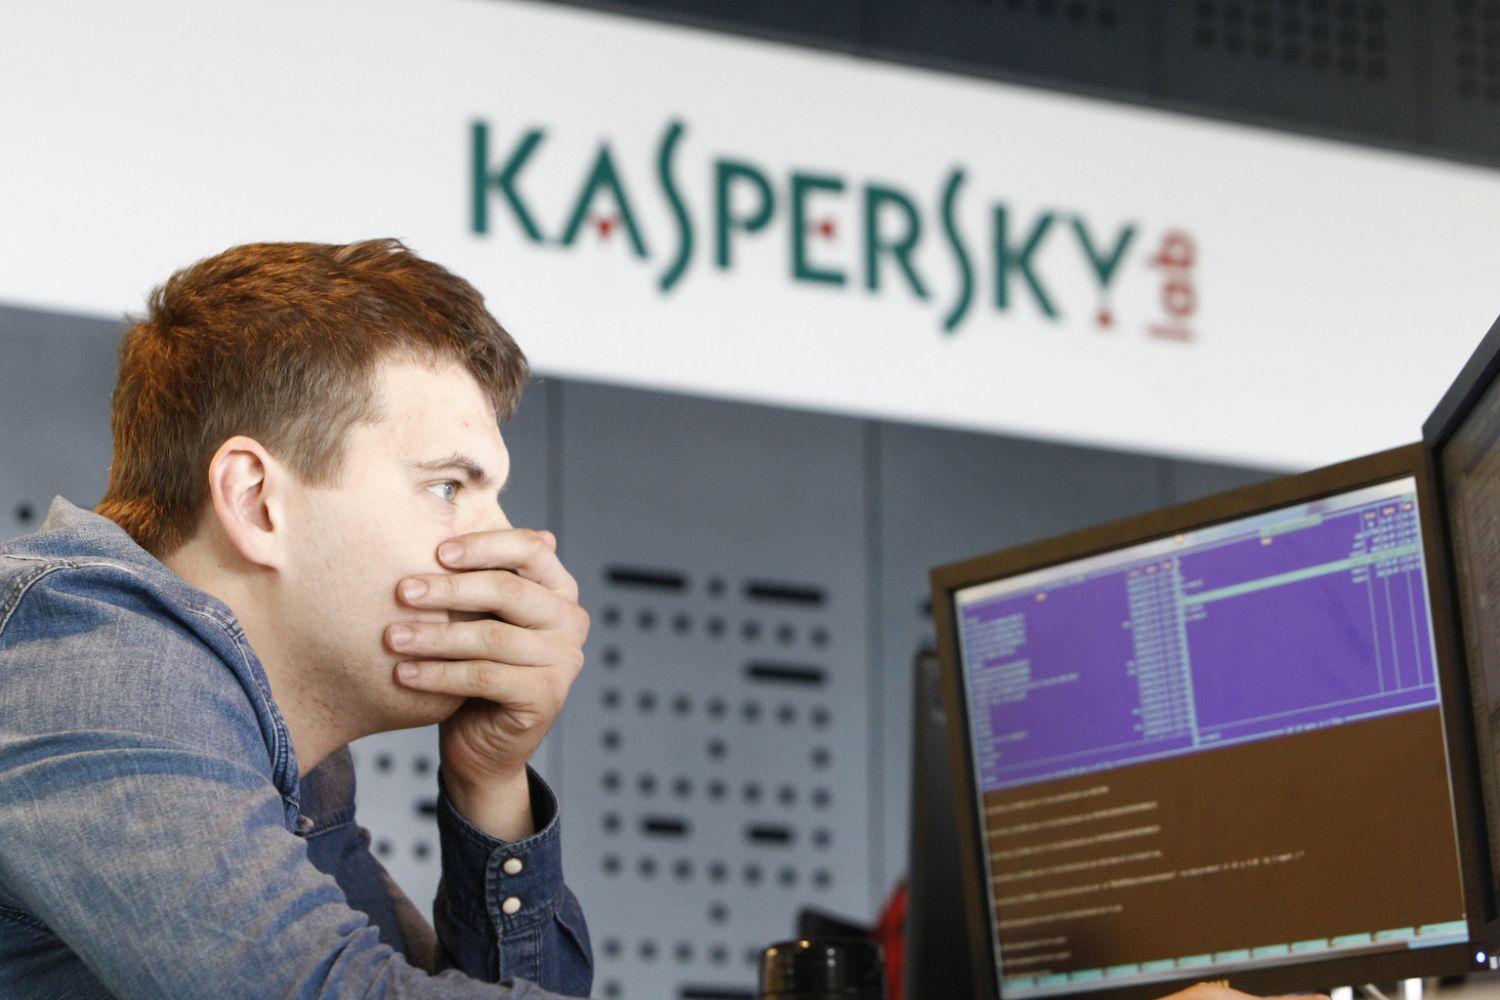 Még a Kaspersky dolgozóinak is leesett az álluk az új kémprogram láttán